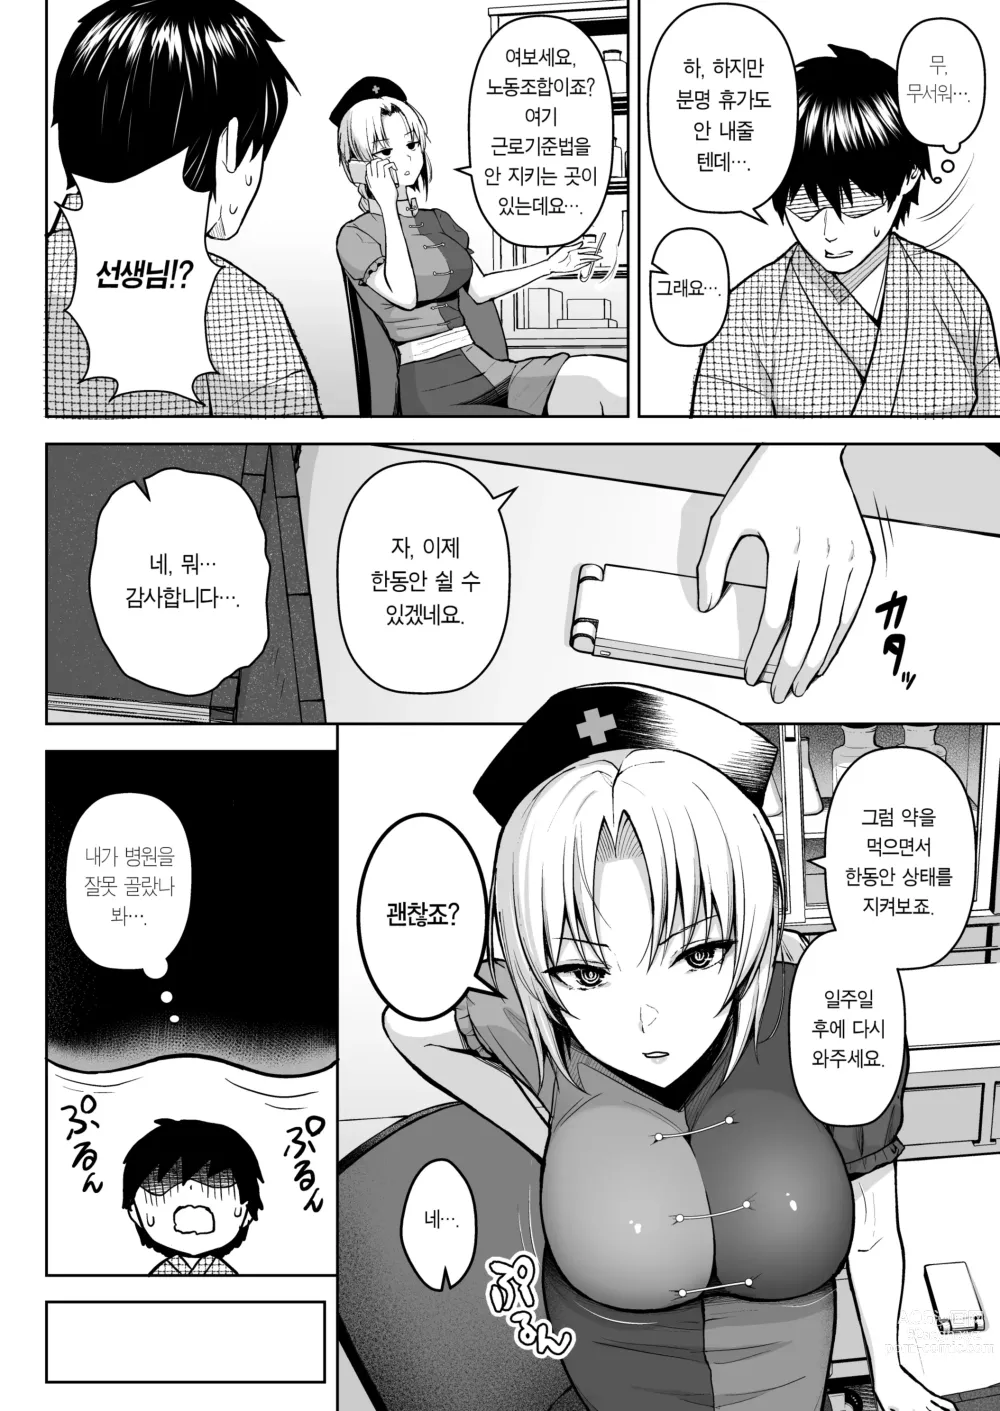 Page 4 of doujinshi 에이린이 가슴을 존나 괴롭혀져서 P컵이 되기까지의 이야기